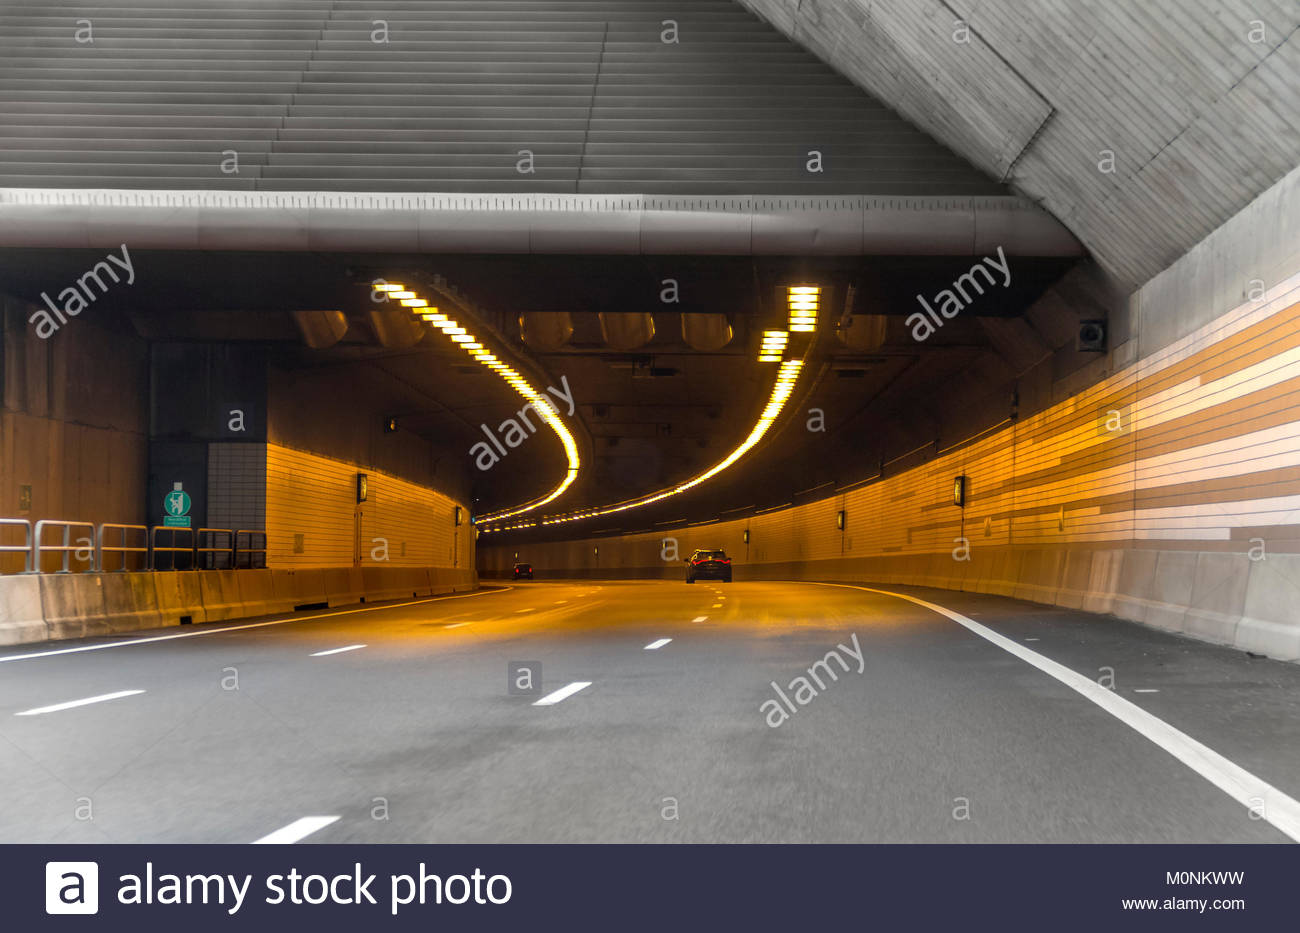 Tunnel Englischer Garten Schön Underpass Tunnel Stock S & Underpass Tunnel Stock